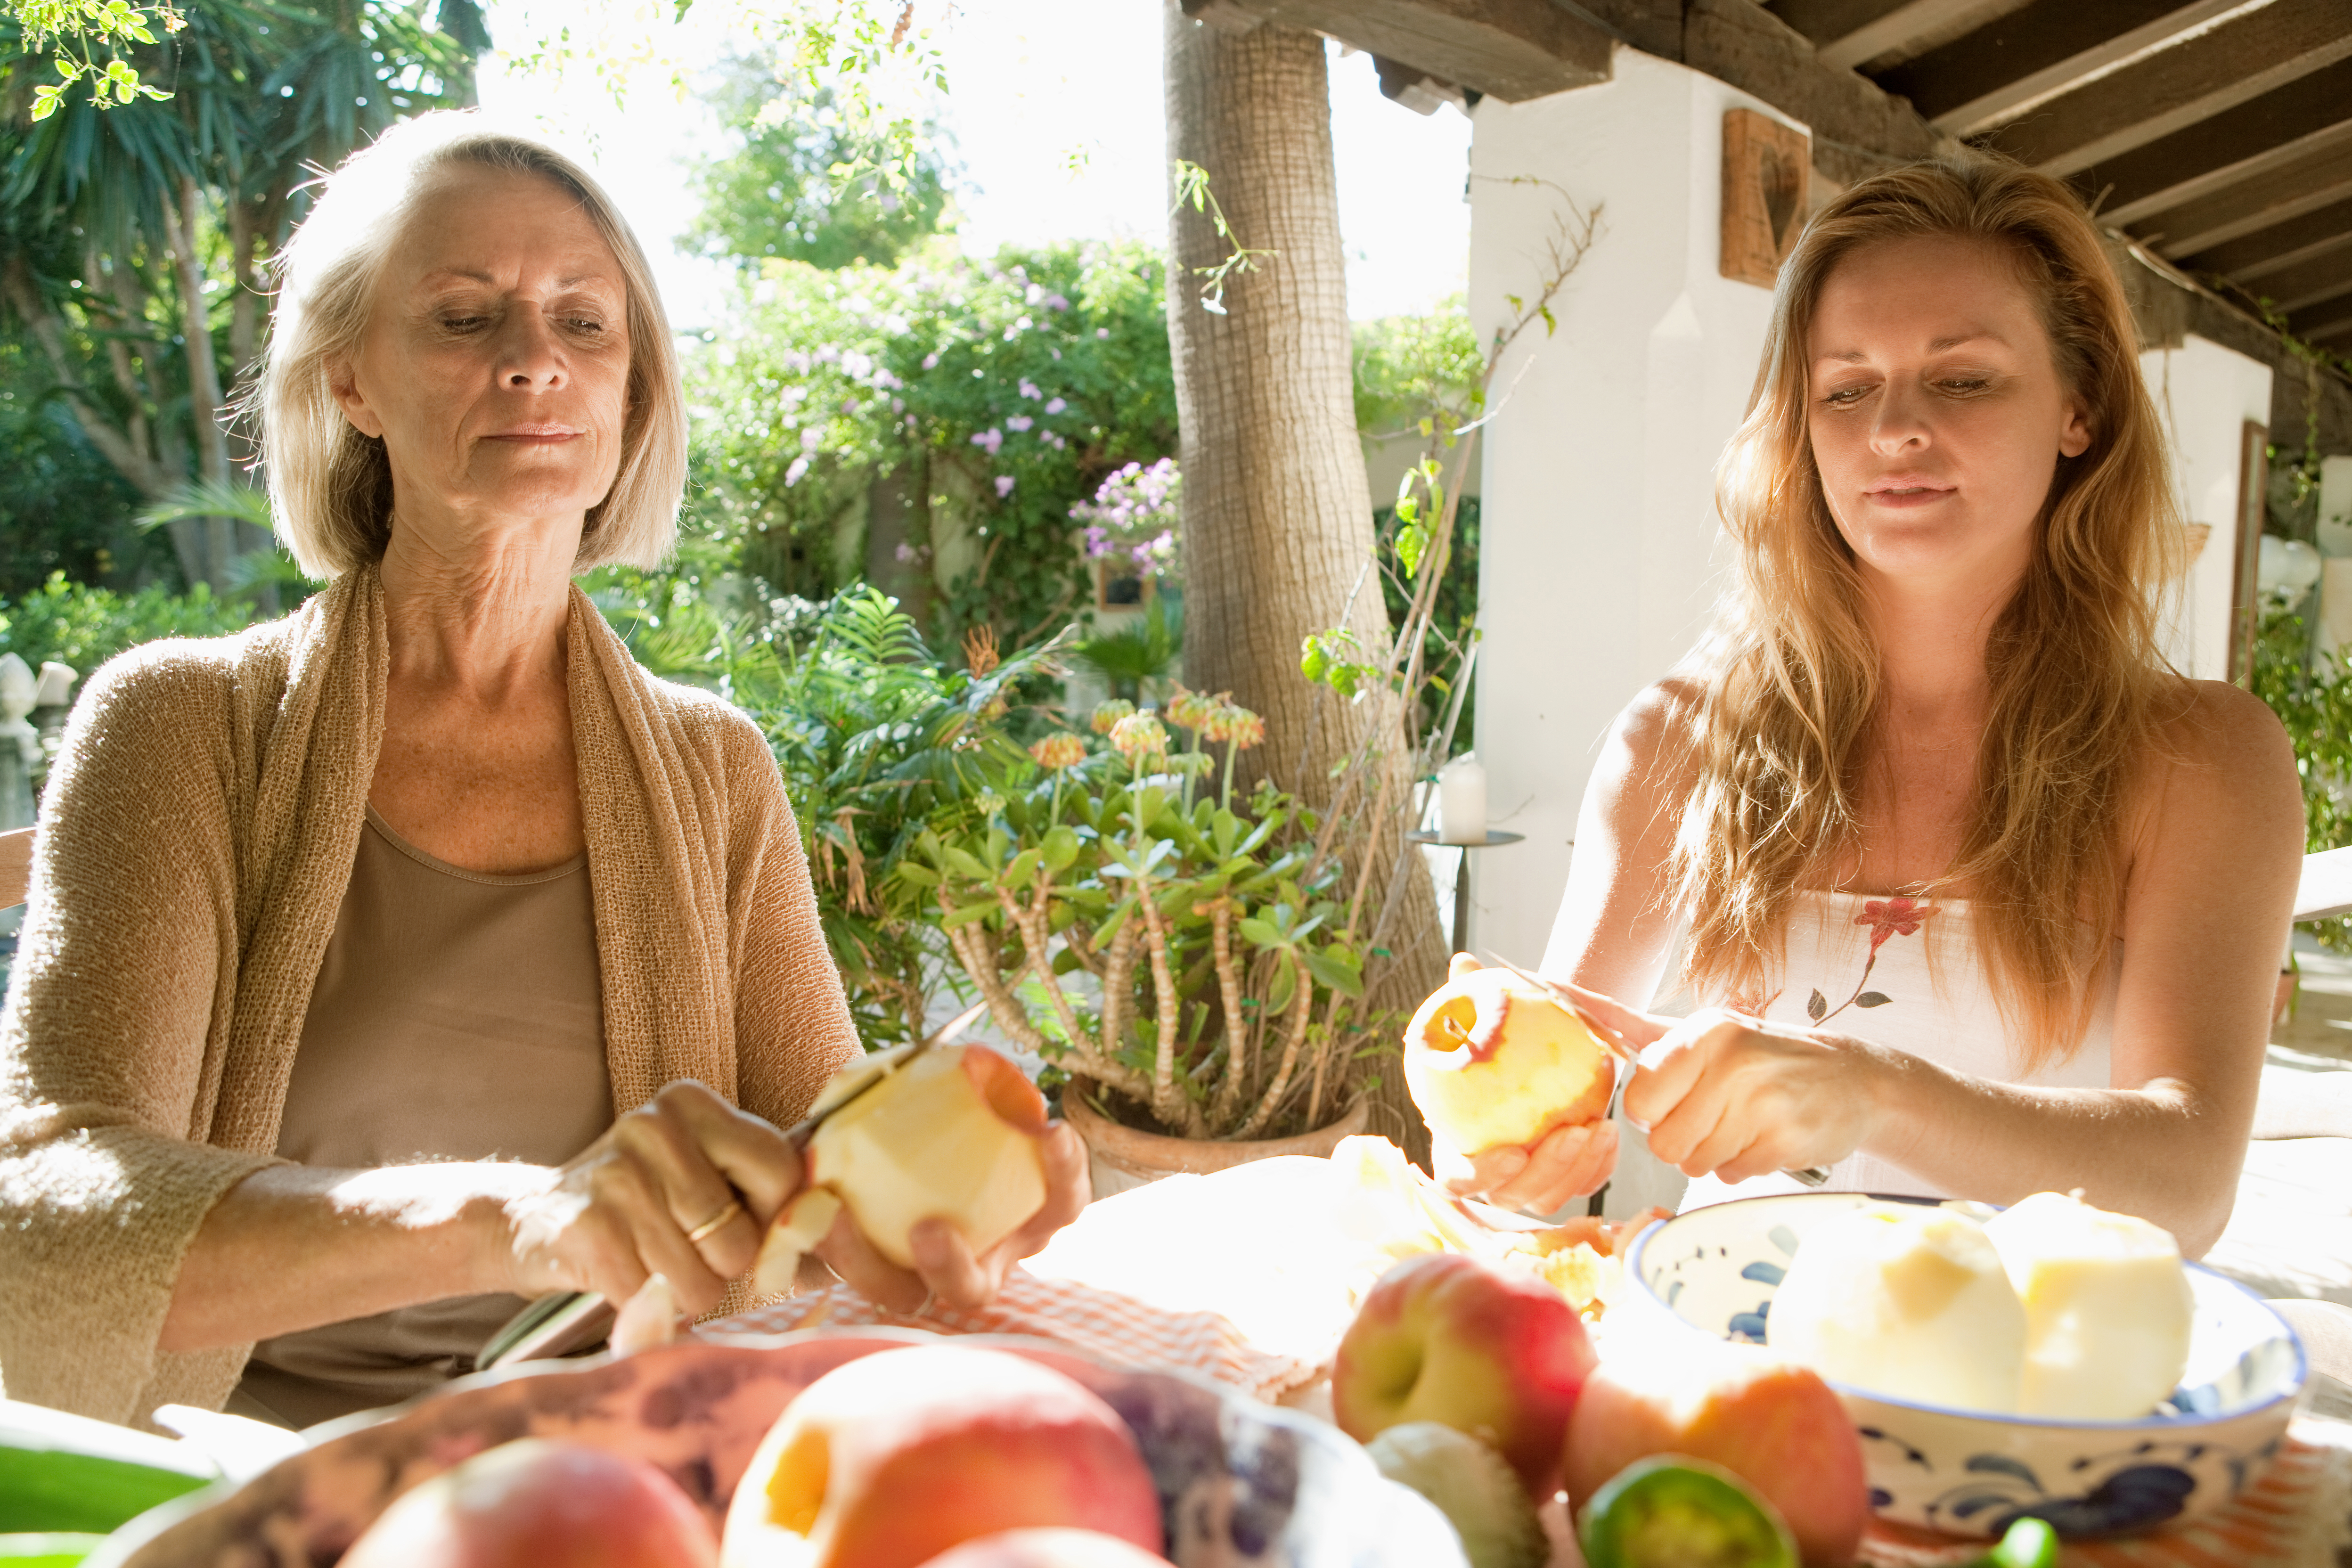 Deux femmes à une table à manger en train d'éplucher des pommes | Source : Shutterstock